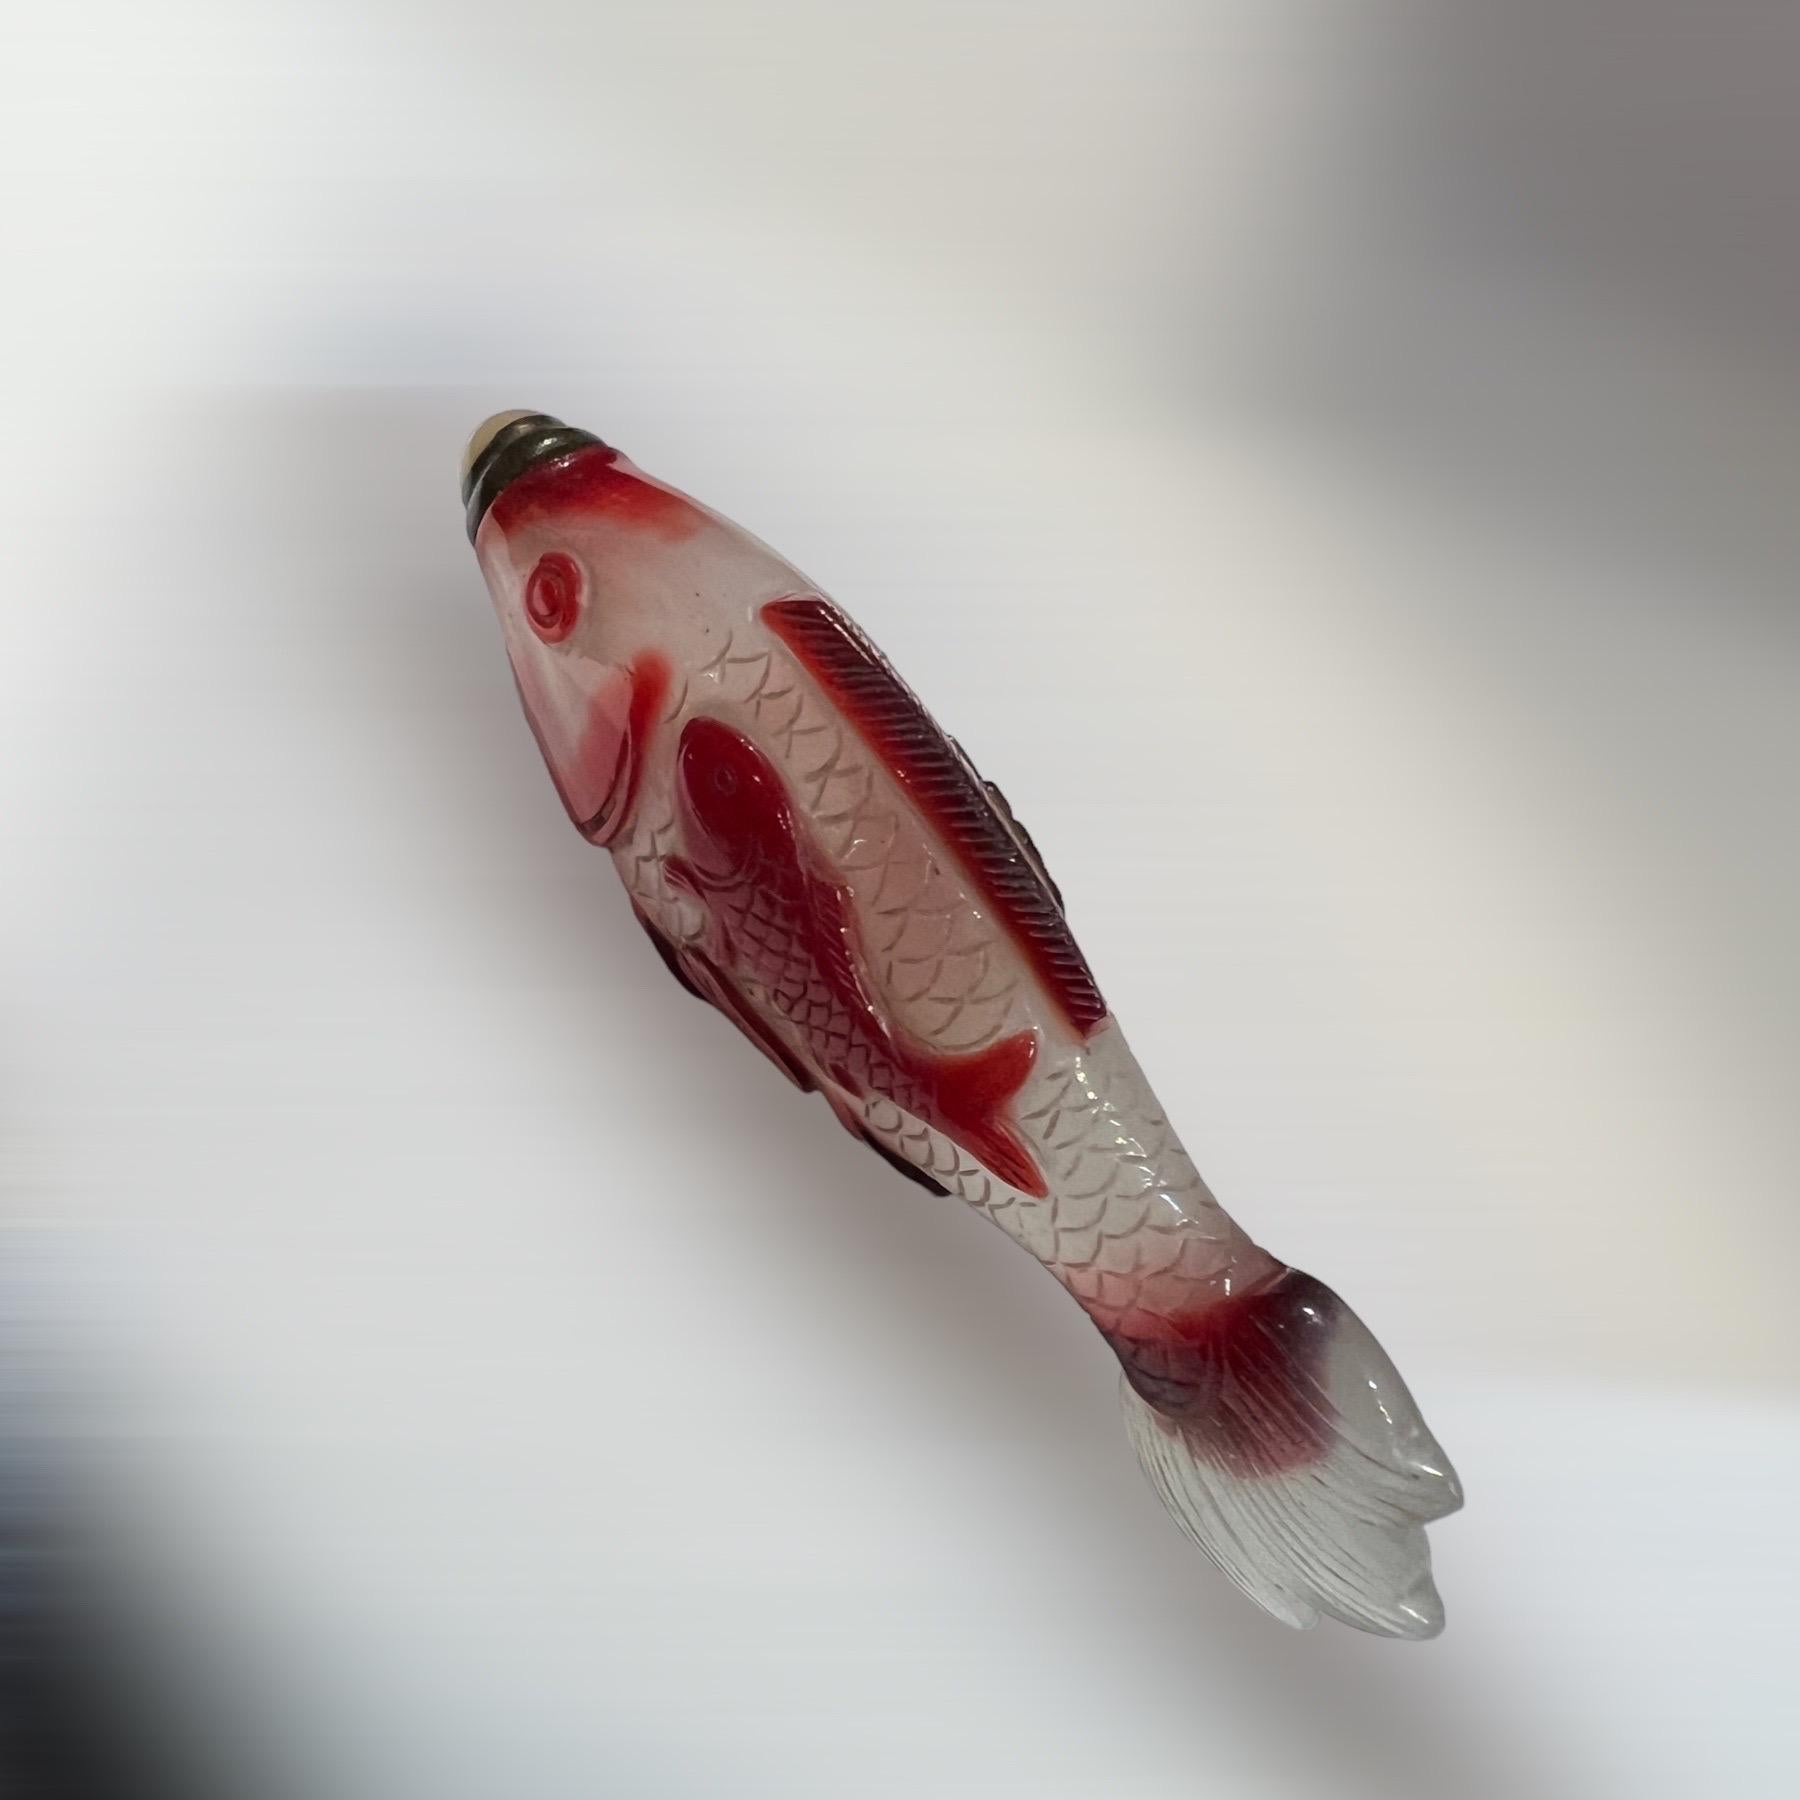 Flacon à priser en verre overlay rouge représentant un poisson, 19e siècle
Rare tabatière en verre translucide avec de petites bulles en forme de poisson. Décor en surimpression rouge rubis avec un poisson parmi les lotus.
Chine, XIXe